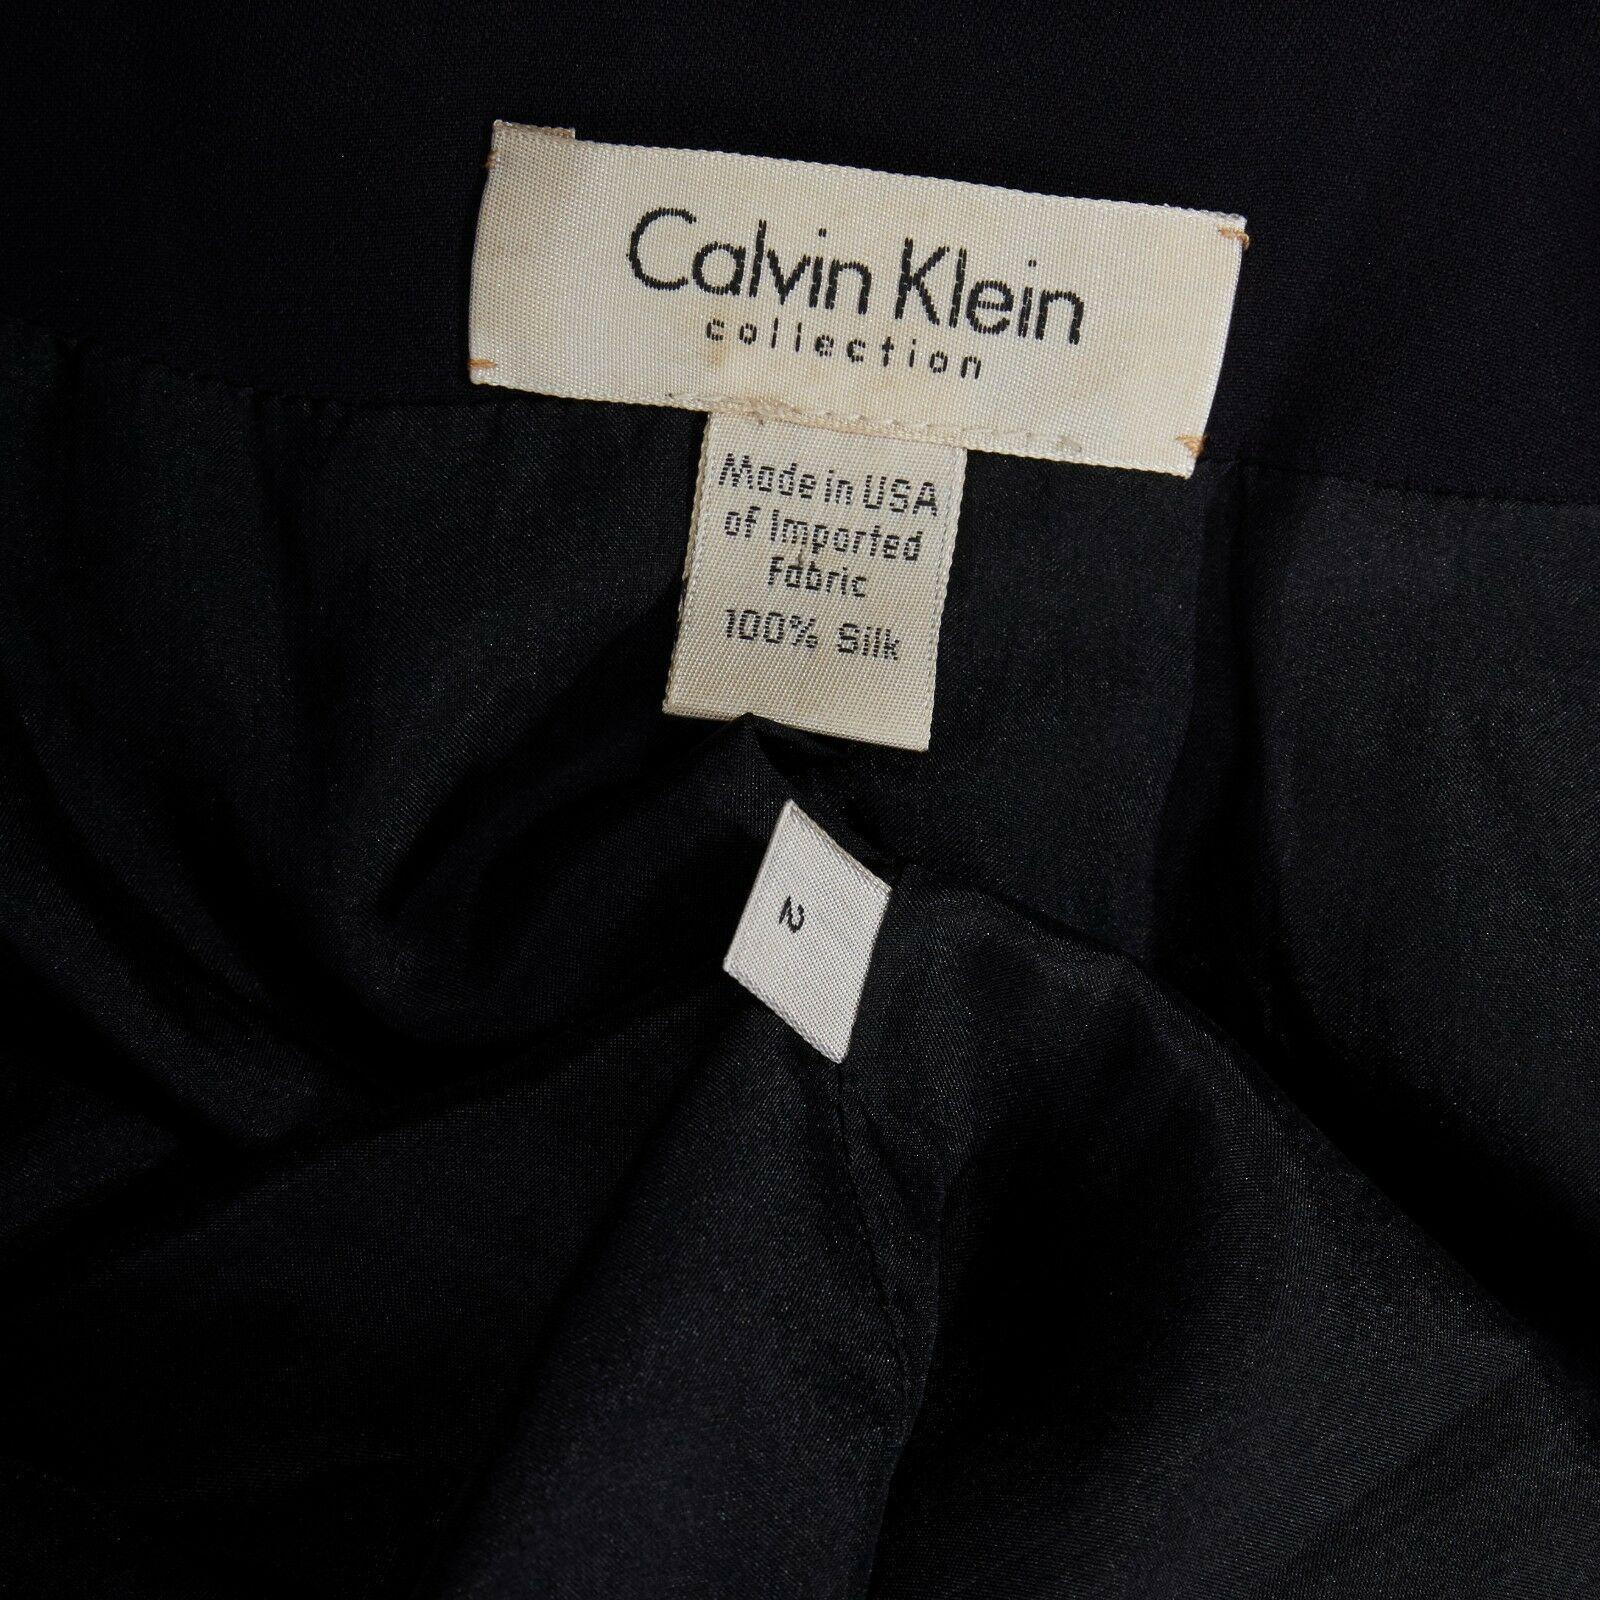 CALVIN KLEIN COLLECTION 100% silk black collarless minimal blazer jacket US2 XS 1